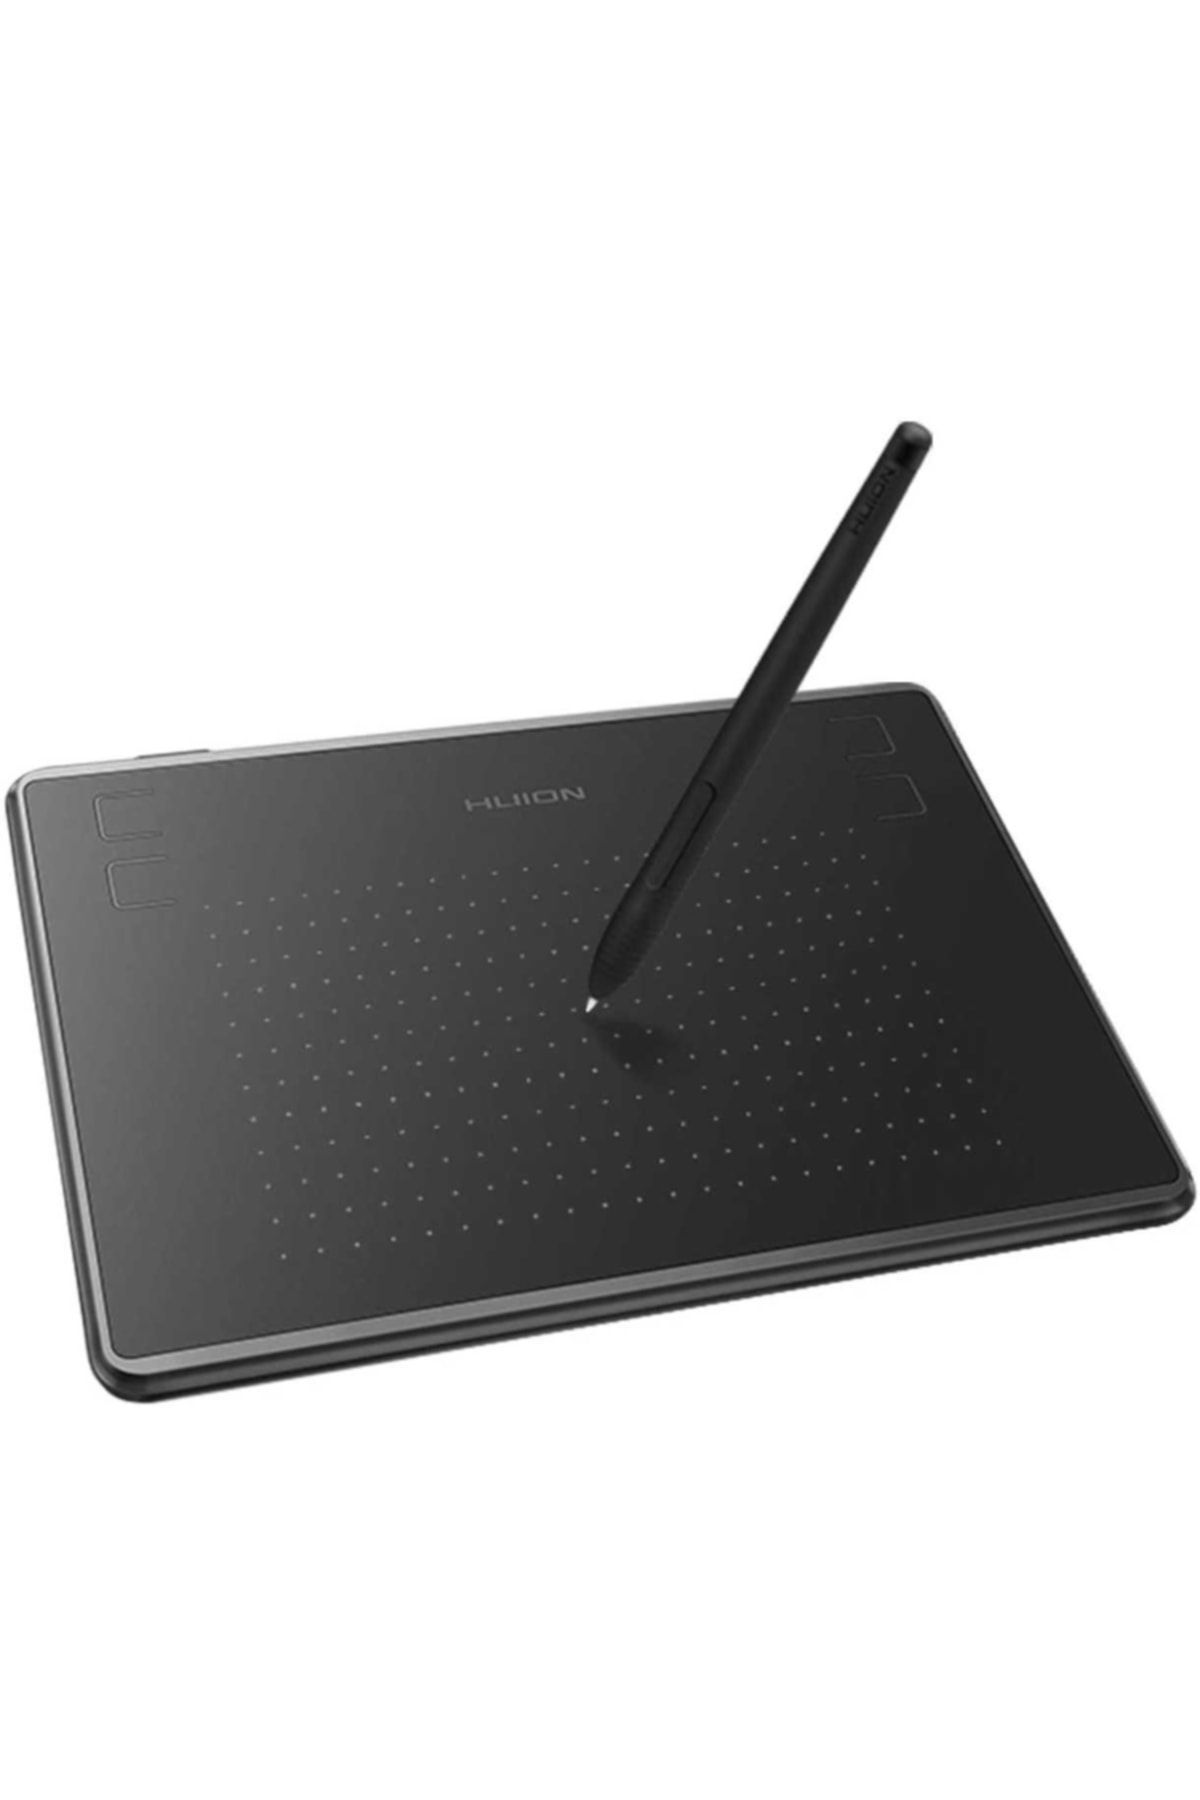 Huion H430p Dijital Grafik Çizim Tableti - Şarj Gerektirmez